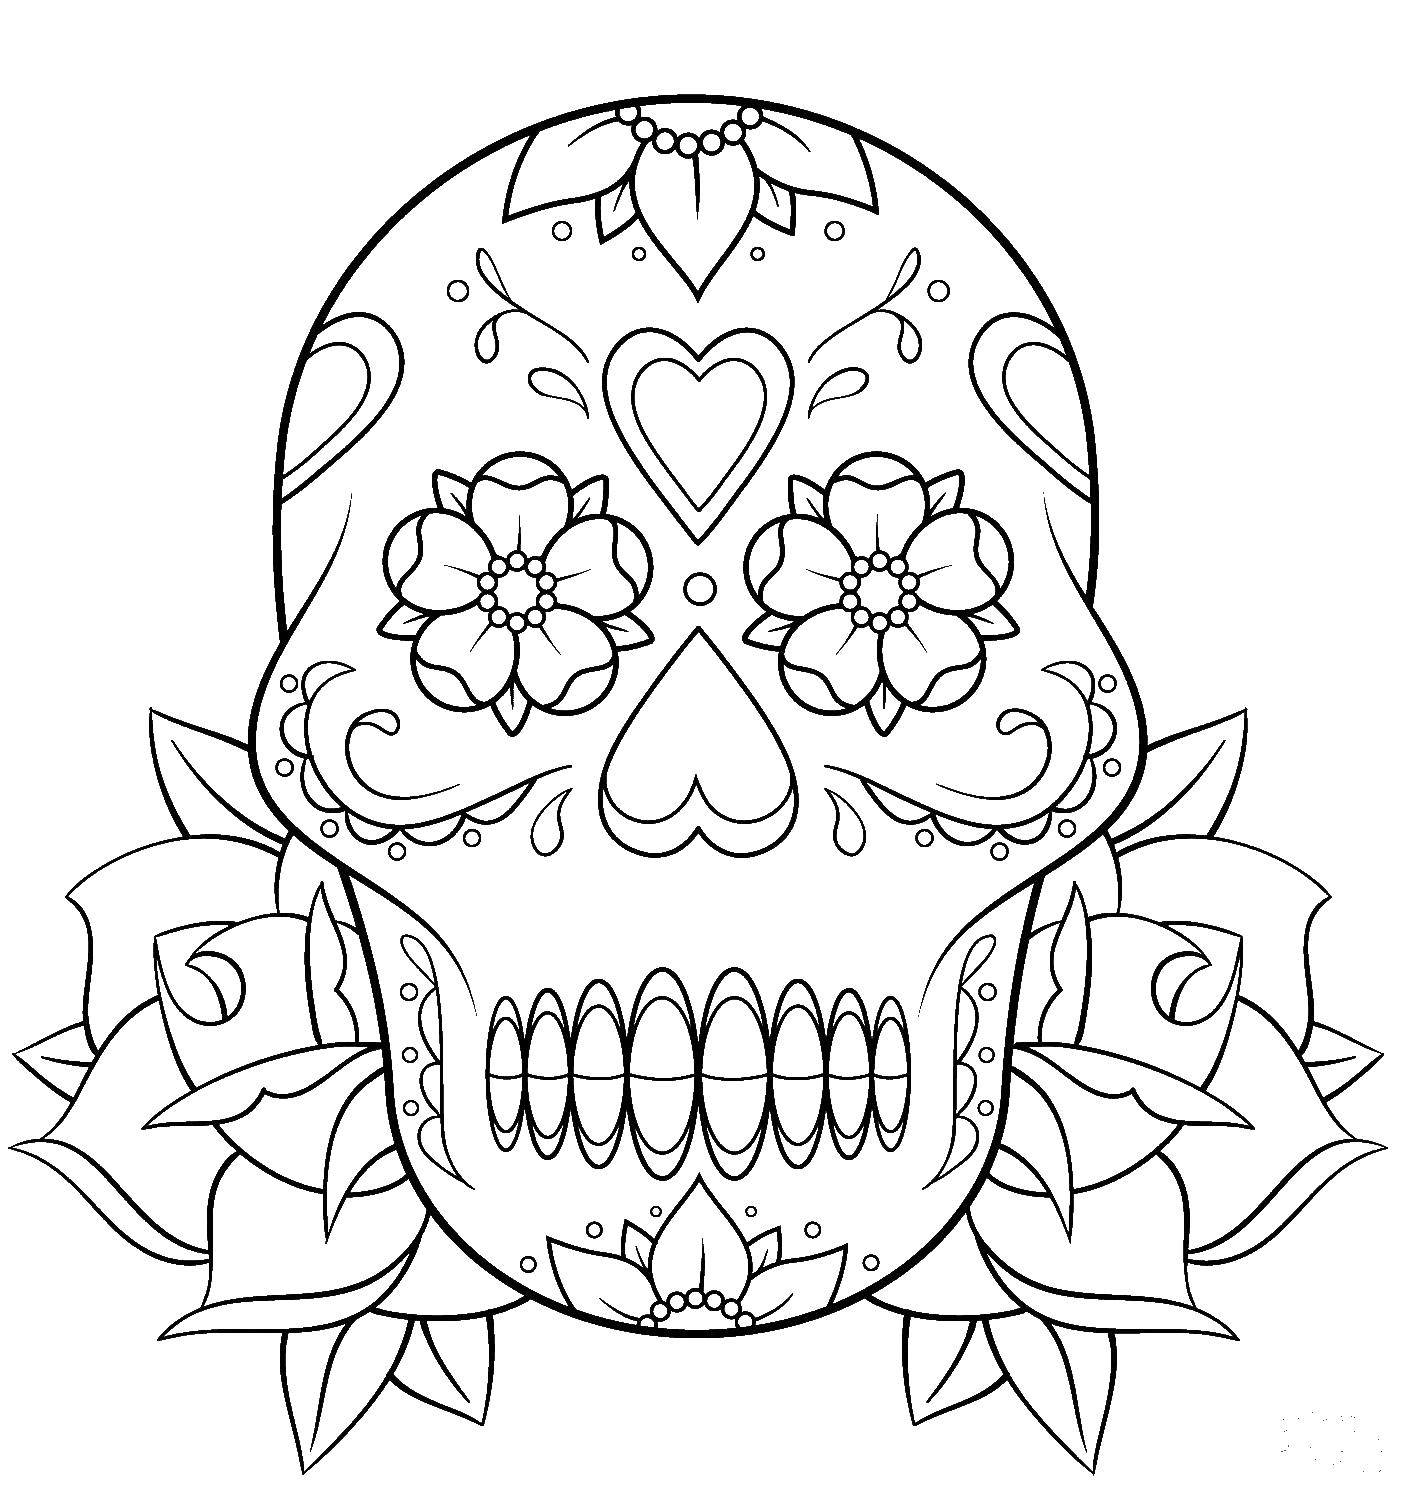 Coloring Patterned skull. Category Skull. Tags:  Skull, patterns.